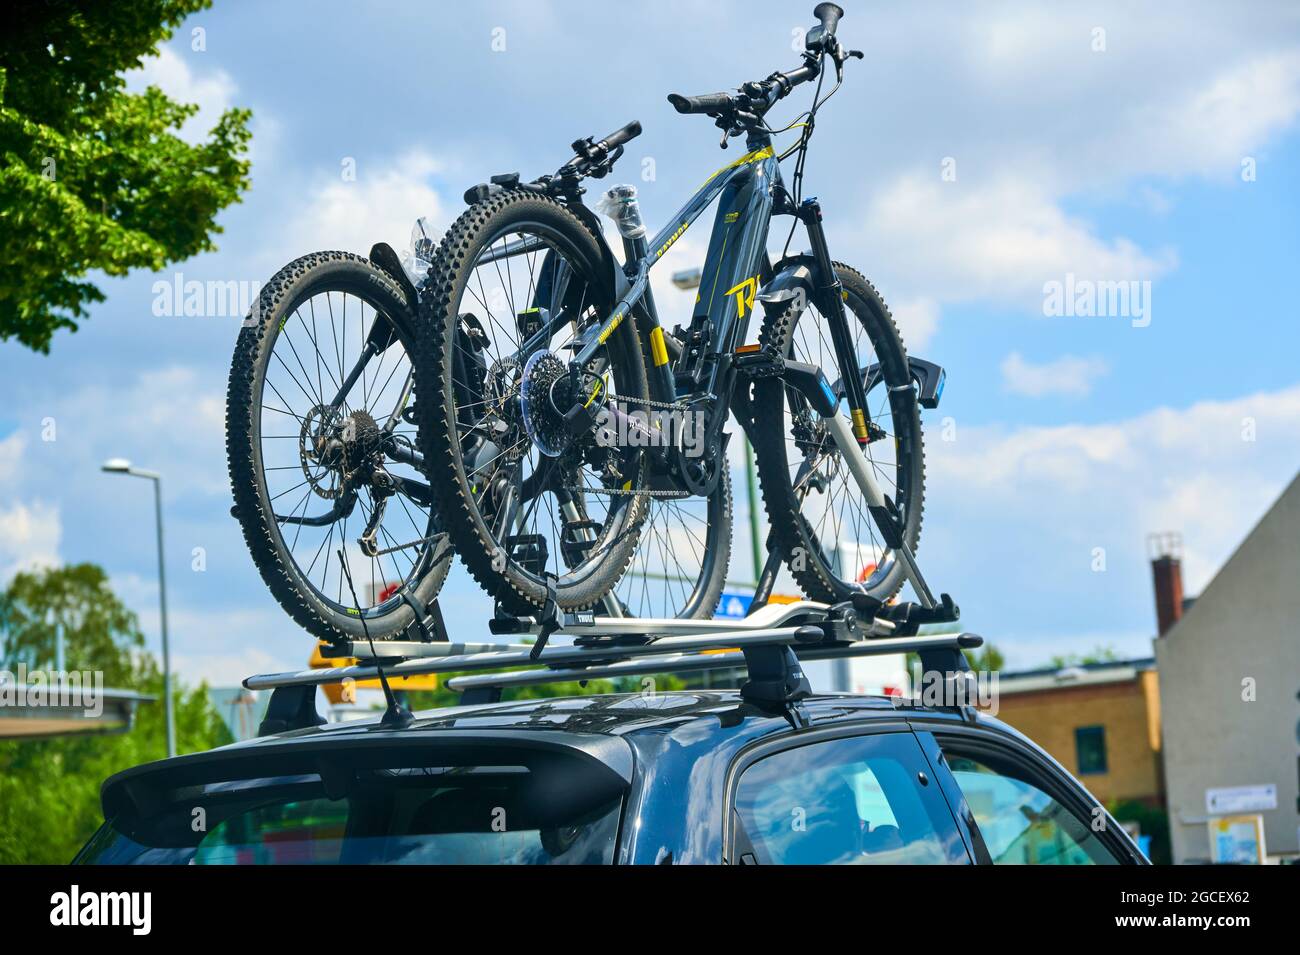 Berlin, Deutschland - 3. Juli 2021: Auto mit einem oben angebrachten  Fahrradträger und zwei darauf montierten Fahrrädern Stockfotografie - Alamy